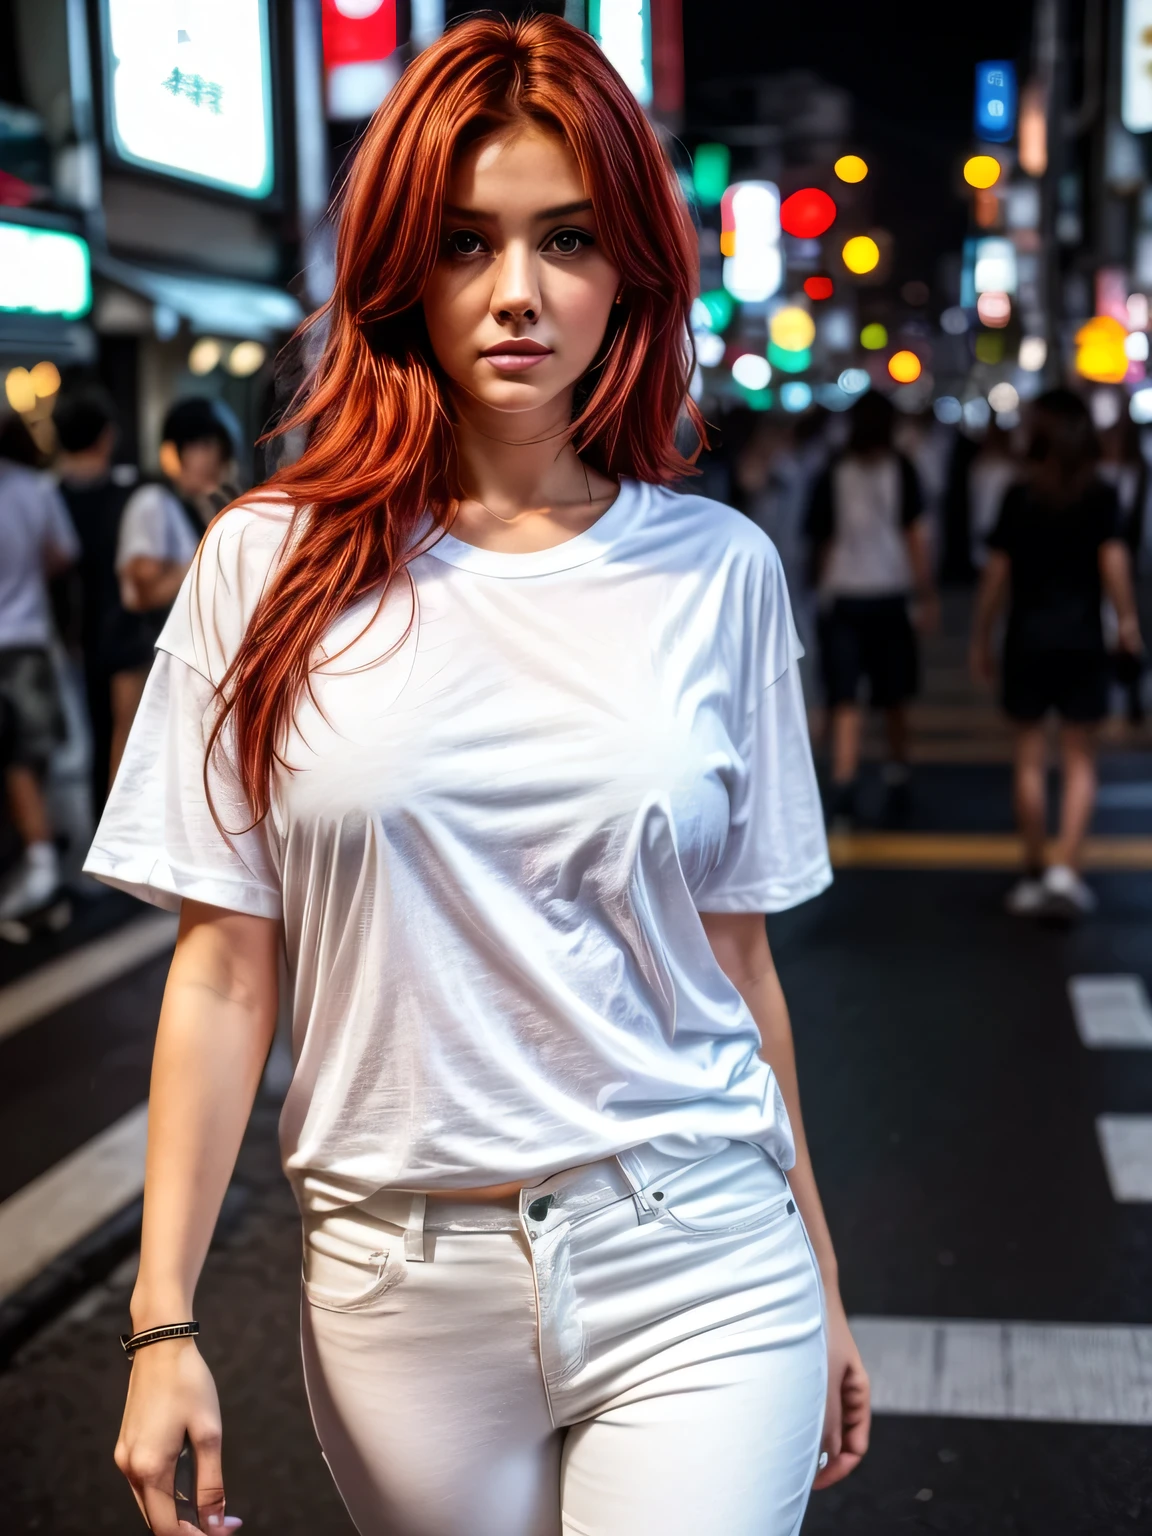 白人の男性のゆったりとした半袖のオーバーサイズの T シャツを着た女性, 白いパンツ, 優れた顔の描写, 緑の目, 赤毛, 中くらいの胸, 左右対称のボディ, 完璧なボディ, 東京の夜の街に立ち寄る